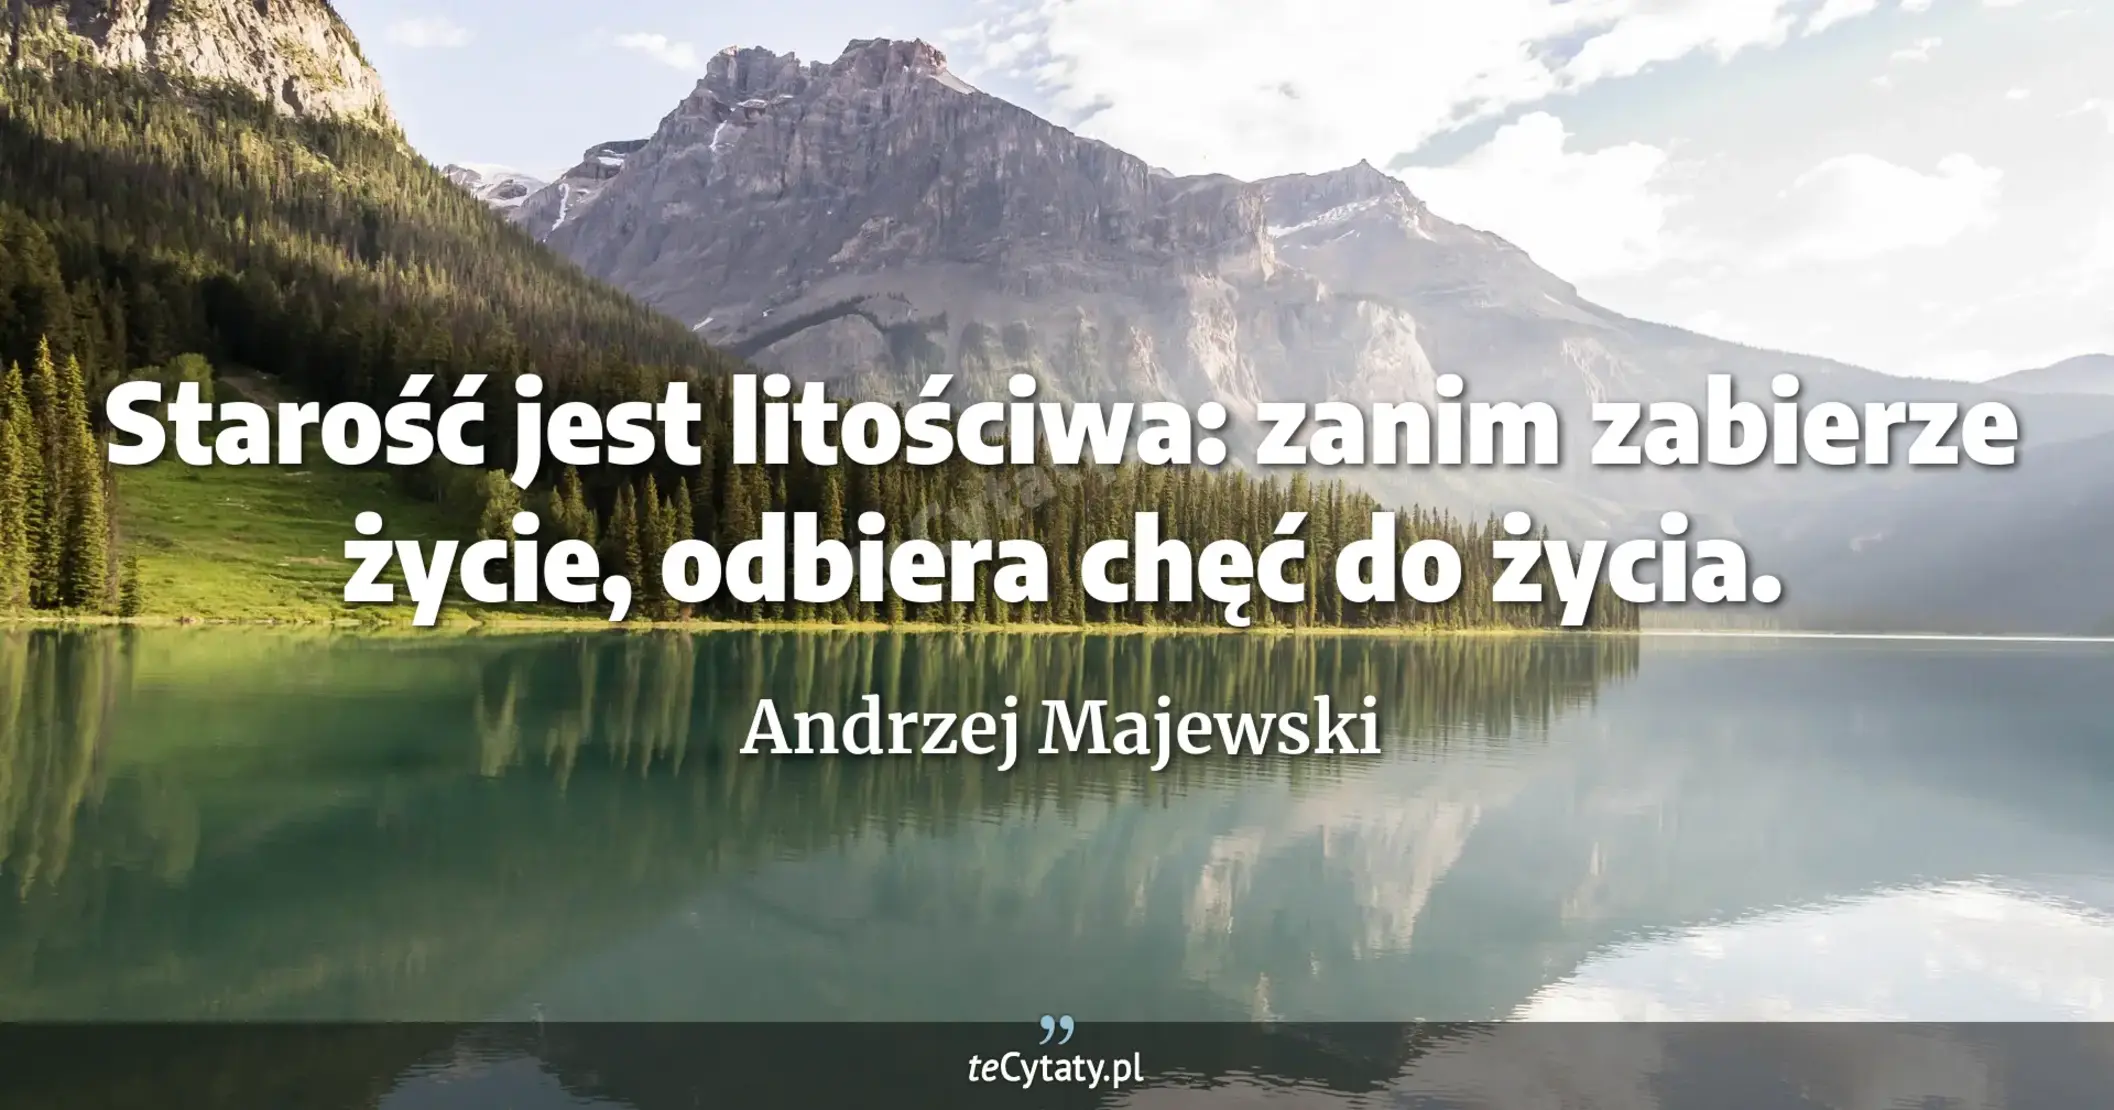 Starość jest litościwa: zanim zabierze życie, odbiera chęć do życia. - Andrzej Majewski